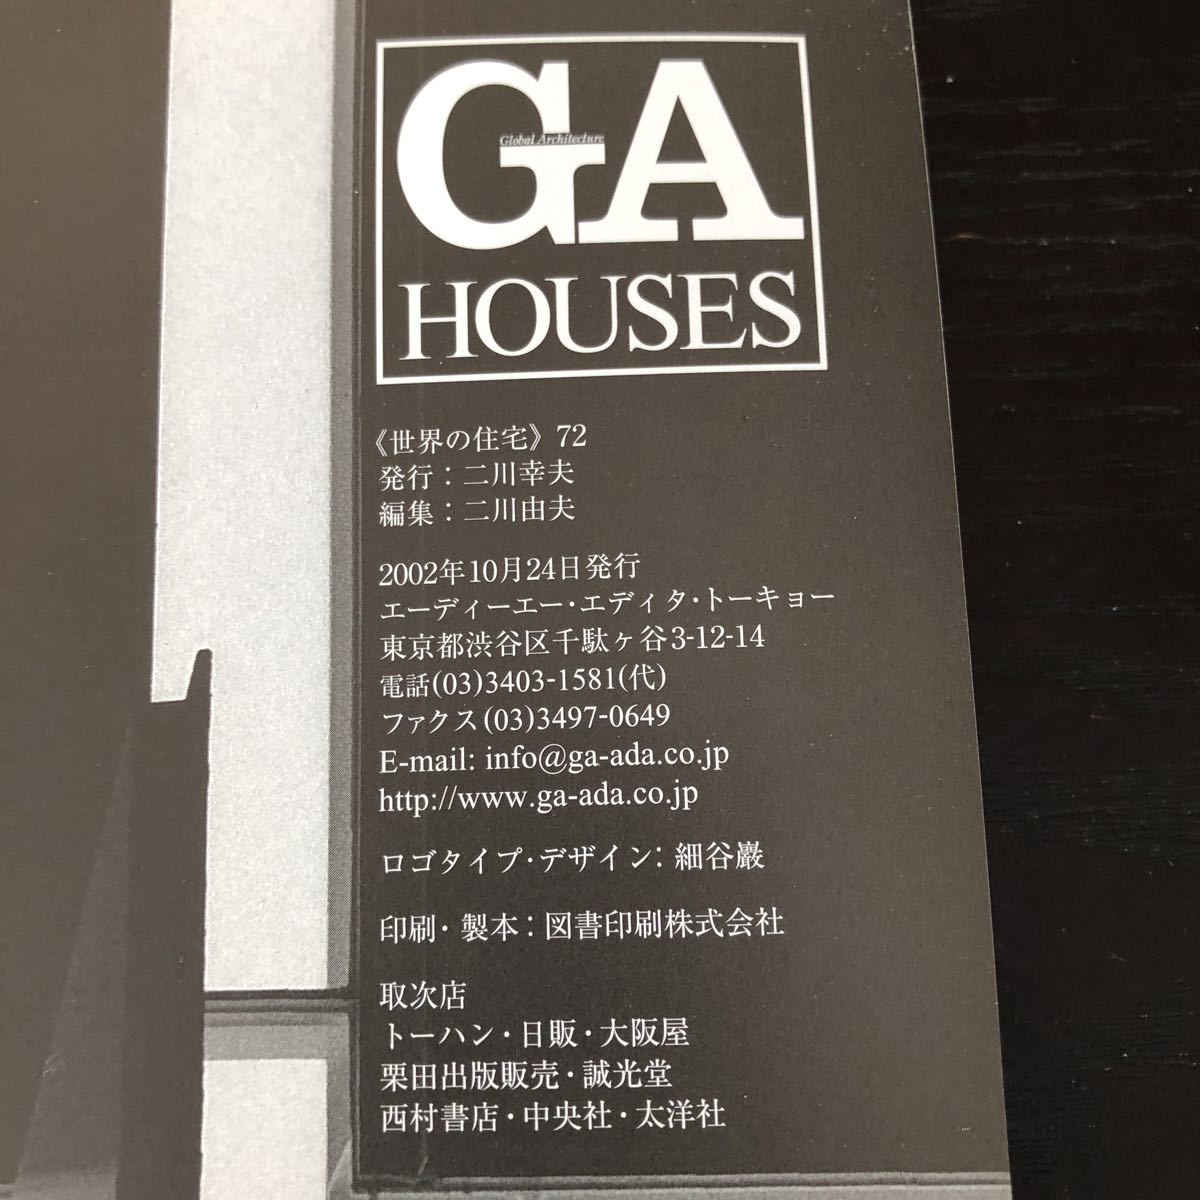 ノ48 GAHOUSES 世界の住宅 2002年10月24日発行 ニ川幸夫 マイホーム デザイン デザイナー 建築 設計図 図面 資料 美術 家 _画像3